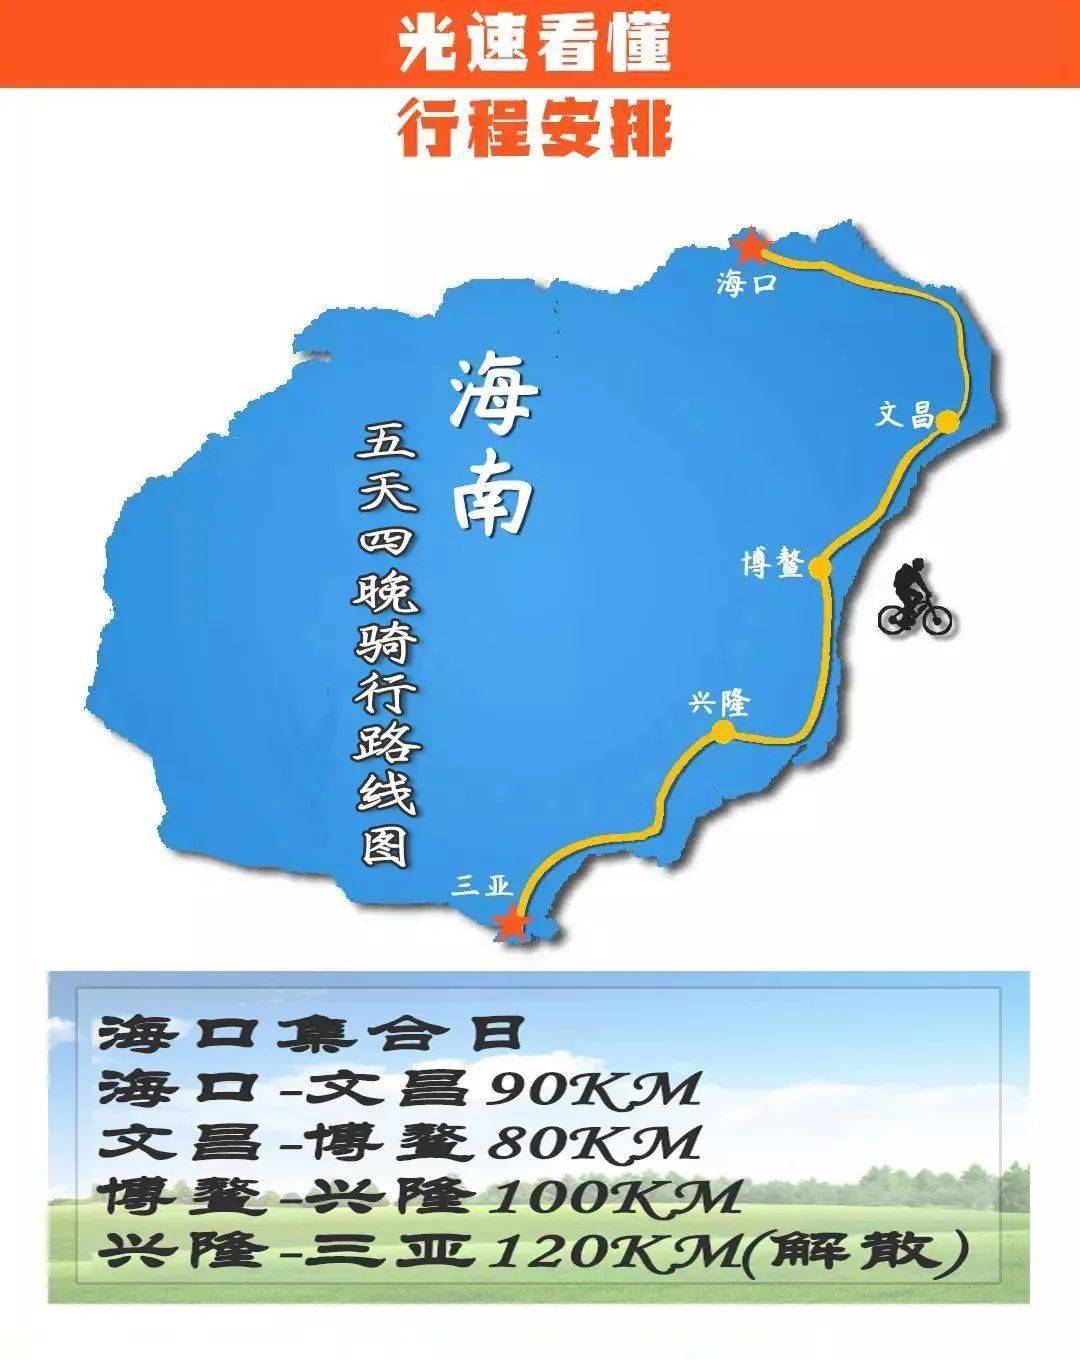 【春节出行】年初二集合:海南5天4夜骑行过不一样的海岛春节旅行!